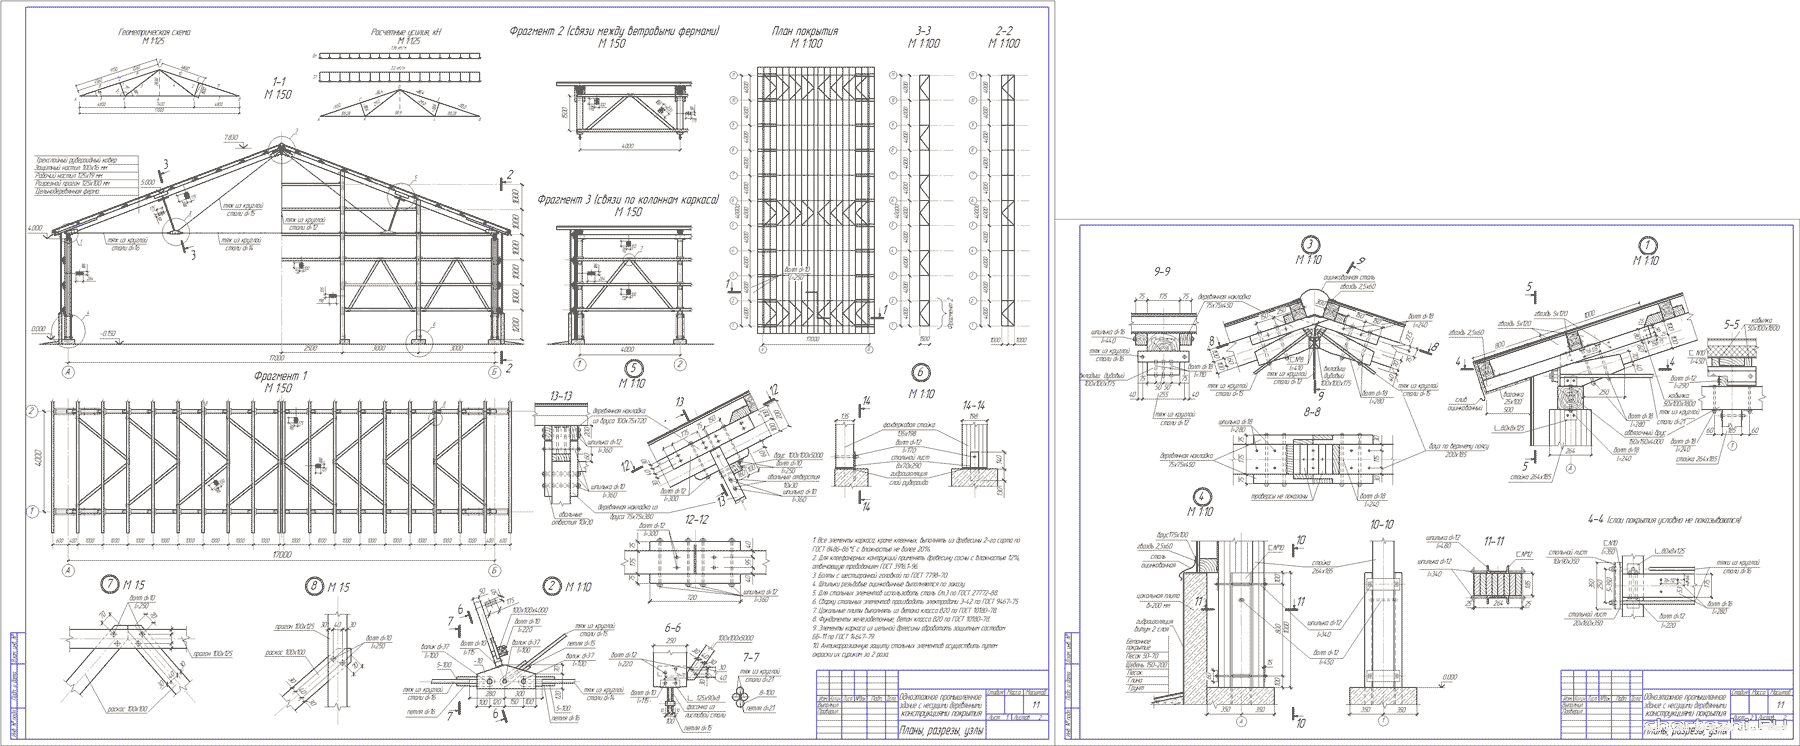 Курсовой проект - Одноэтажное промышленное здание с несущими деревянными конструкциями покрытия